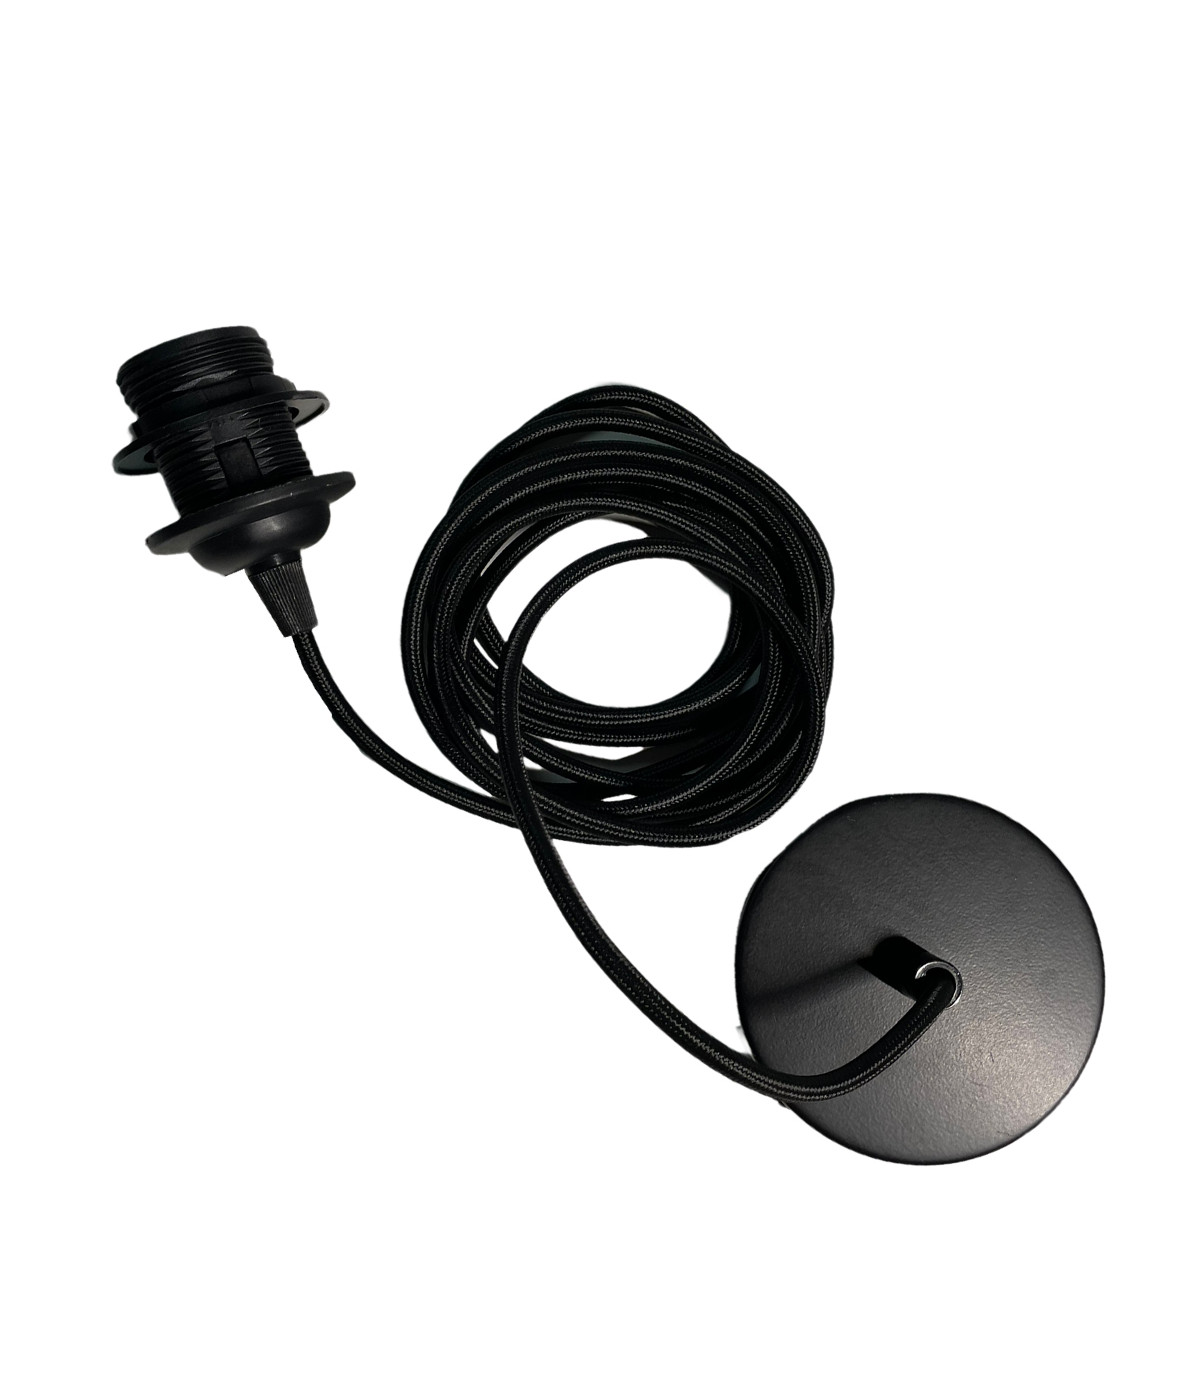 Cable de suspensión negro 3m - Cable Chandelier 